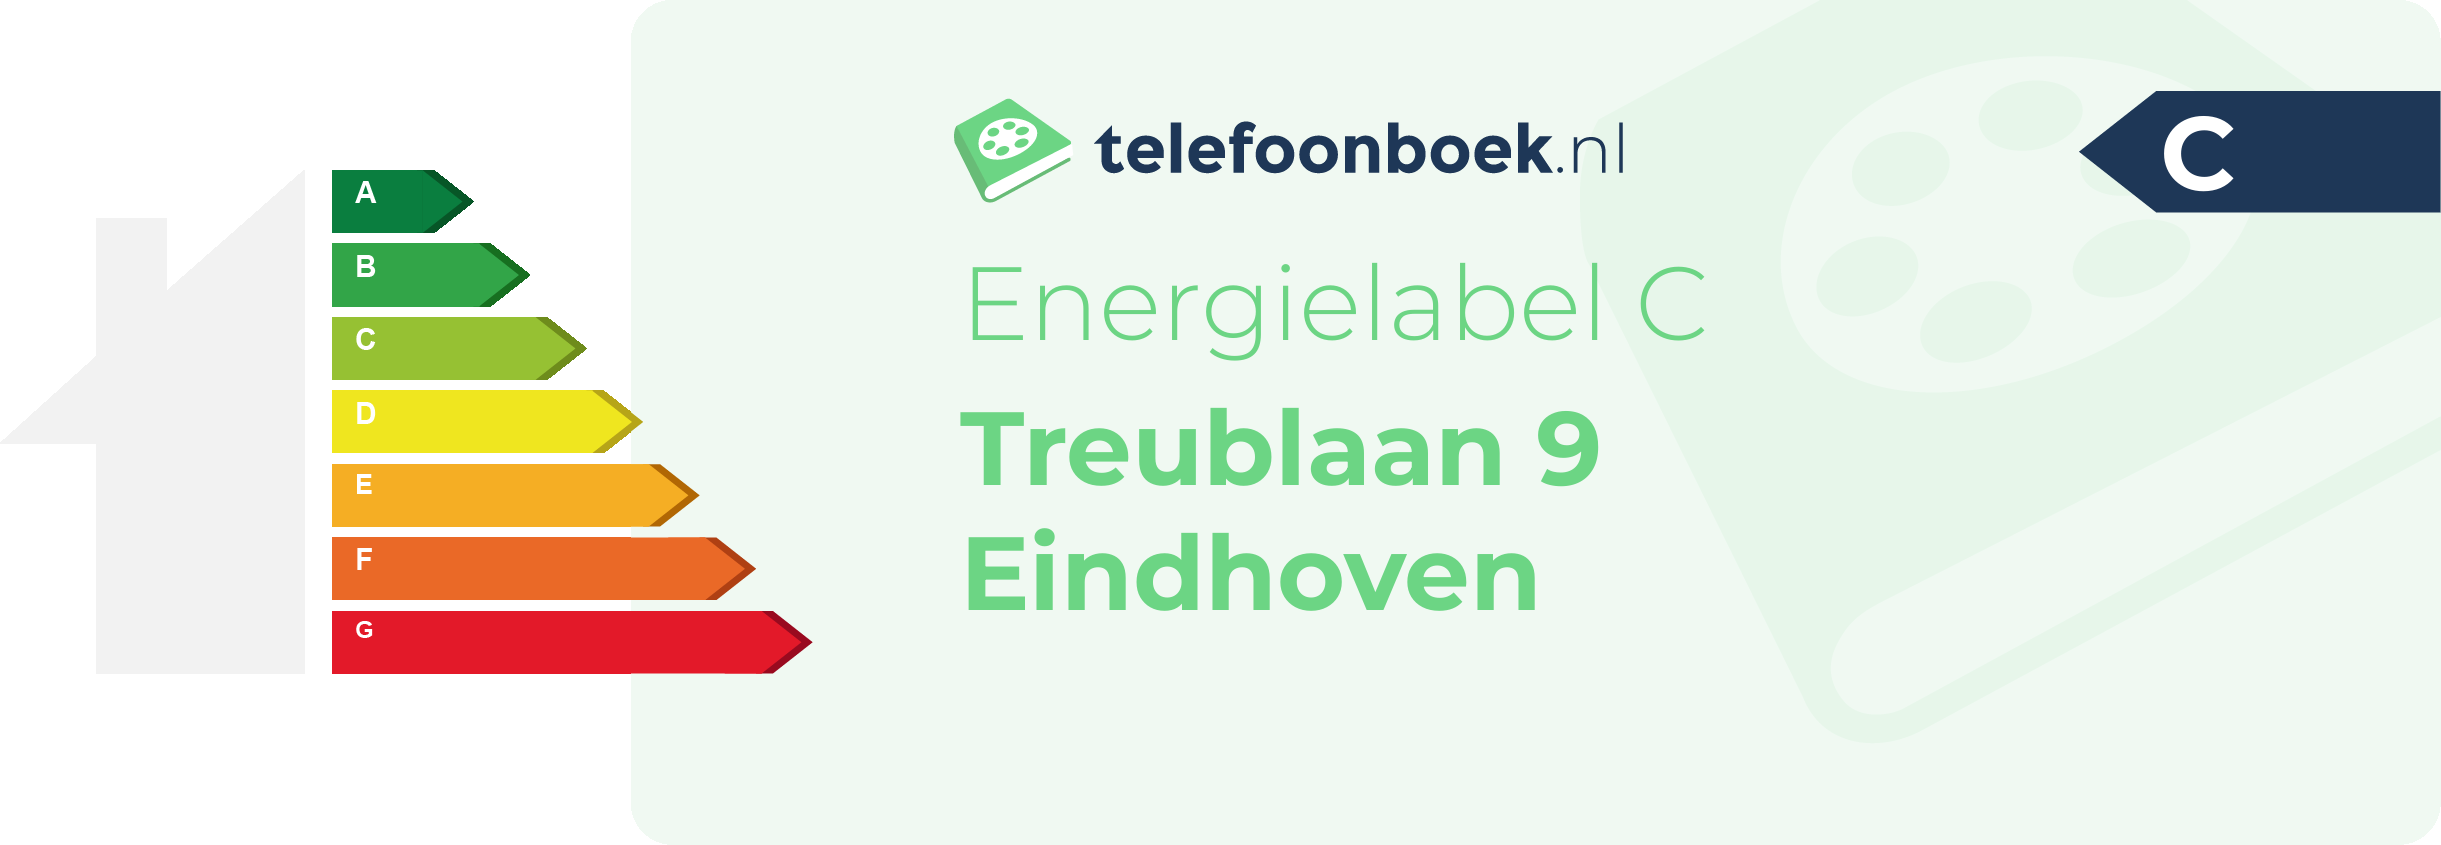 Energielabel Treublaan 9 Eindhoven